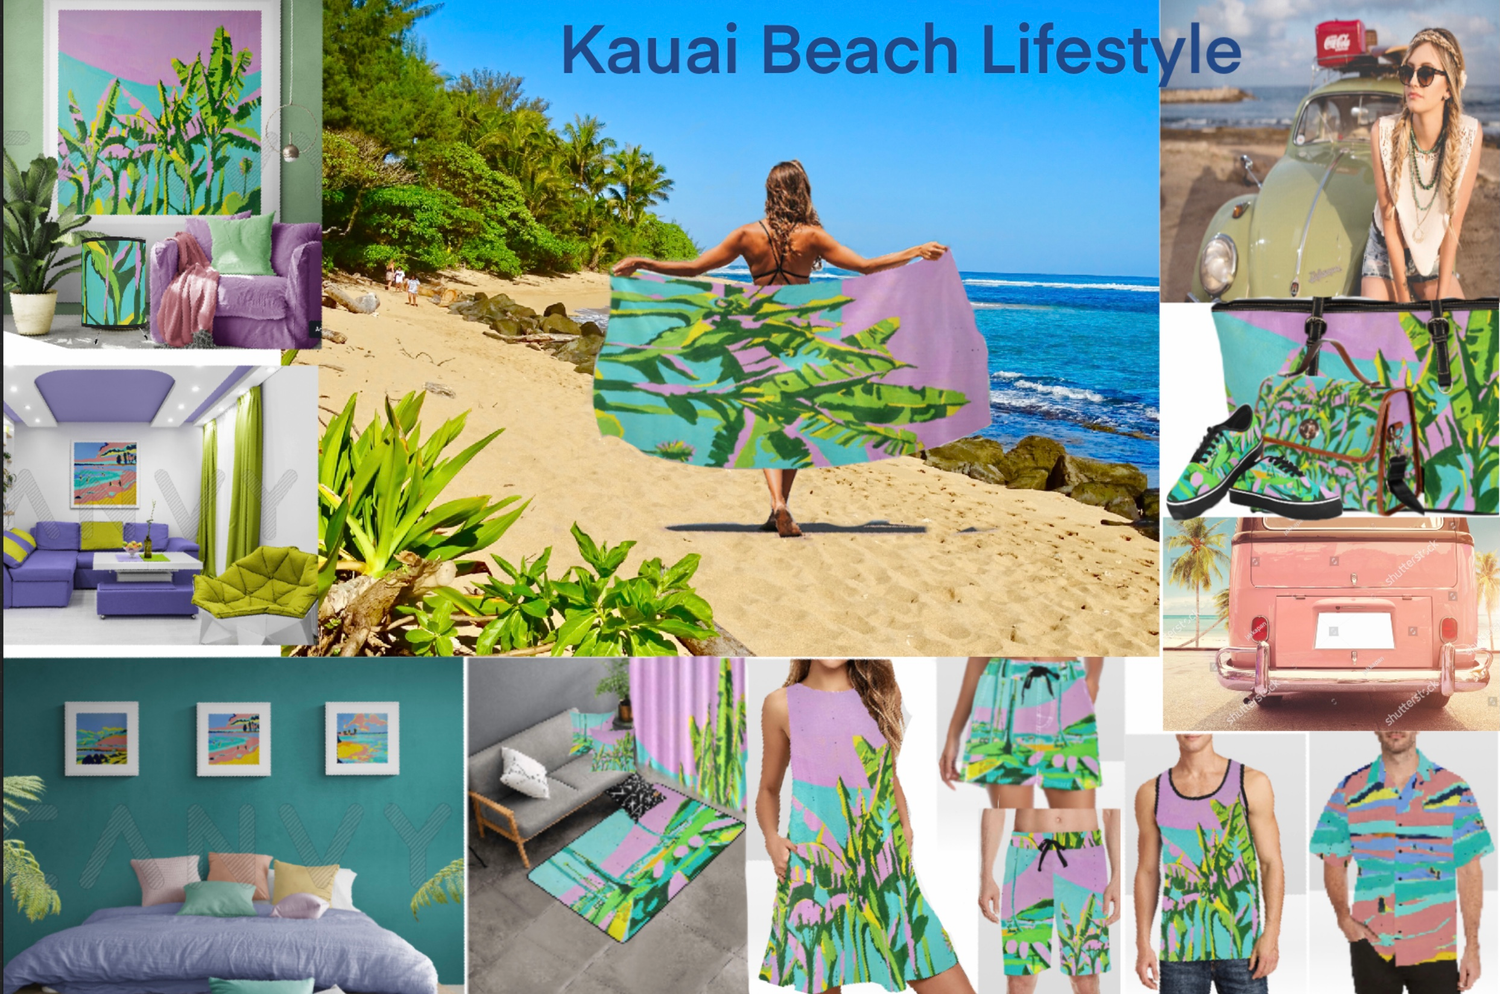 Kauai Beach Lifestyle products